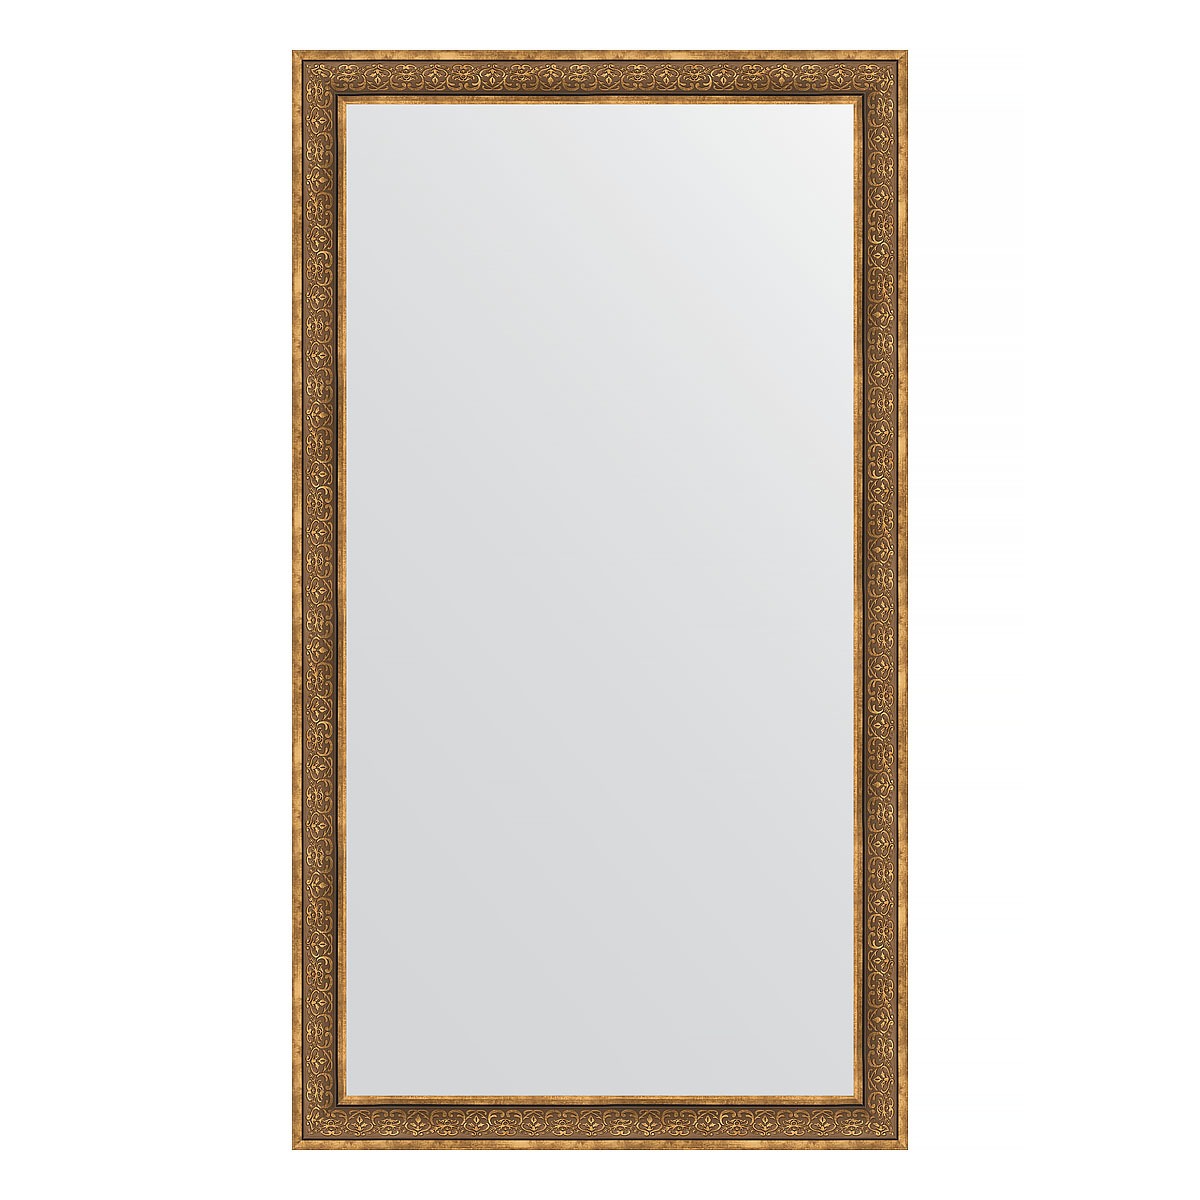 Зеркало напольное в багетной раме Evoform вензель бронзовый 101 мм 114x204 см зеркало напольное в багетной раме вензель бронзовый 101 мм 114x204 см